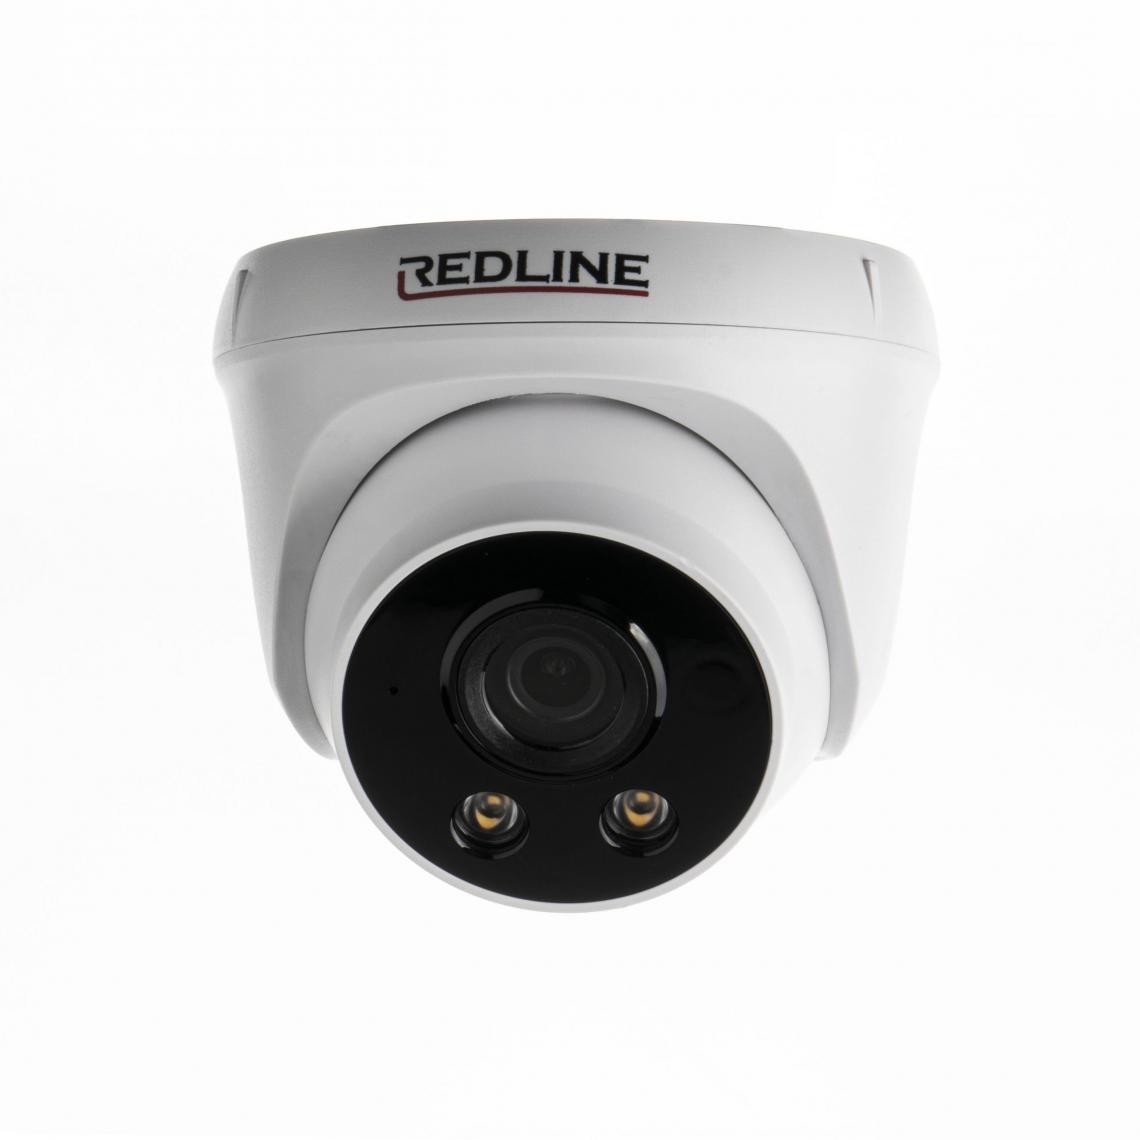 Redline - Caméra Dôme - Redline AHD DC-553S - 5MP, 20fps, 0LUX INFRAROUGE, Sorties AHD, CVBS, TVI, CVI, DC12V - Caméra de surveillance connectée